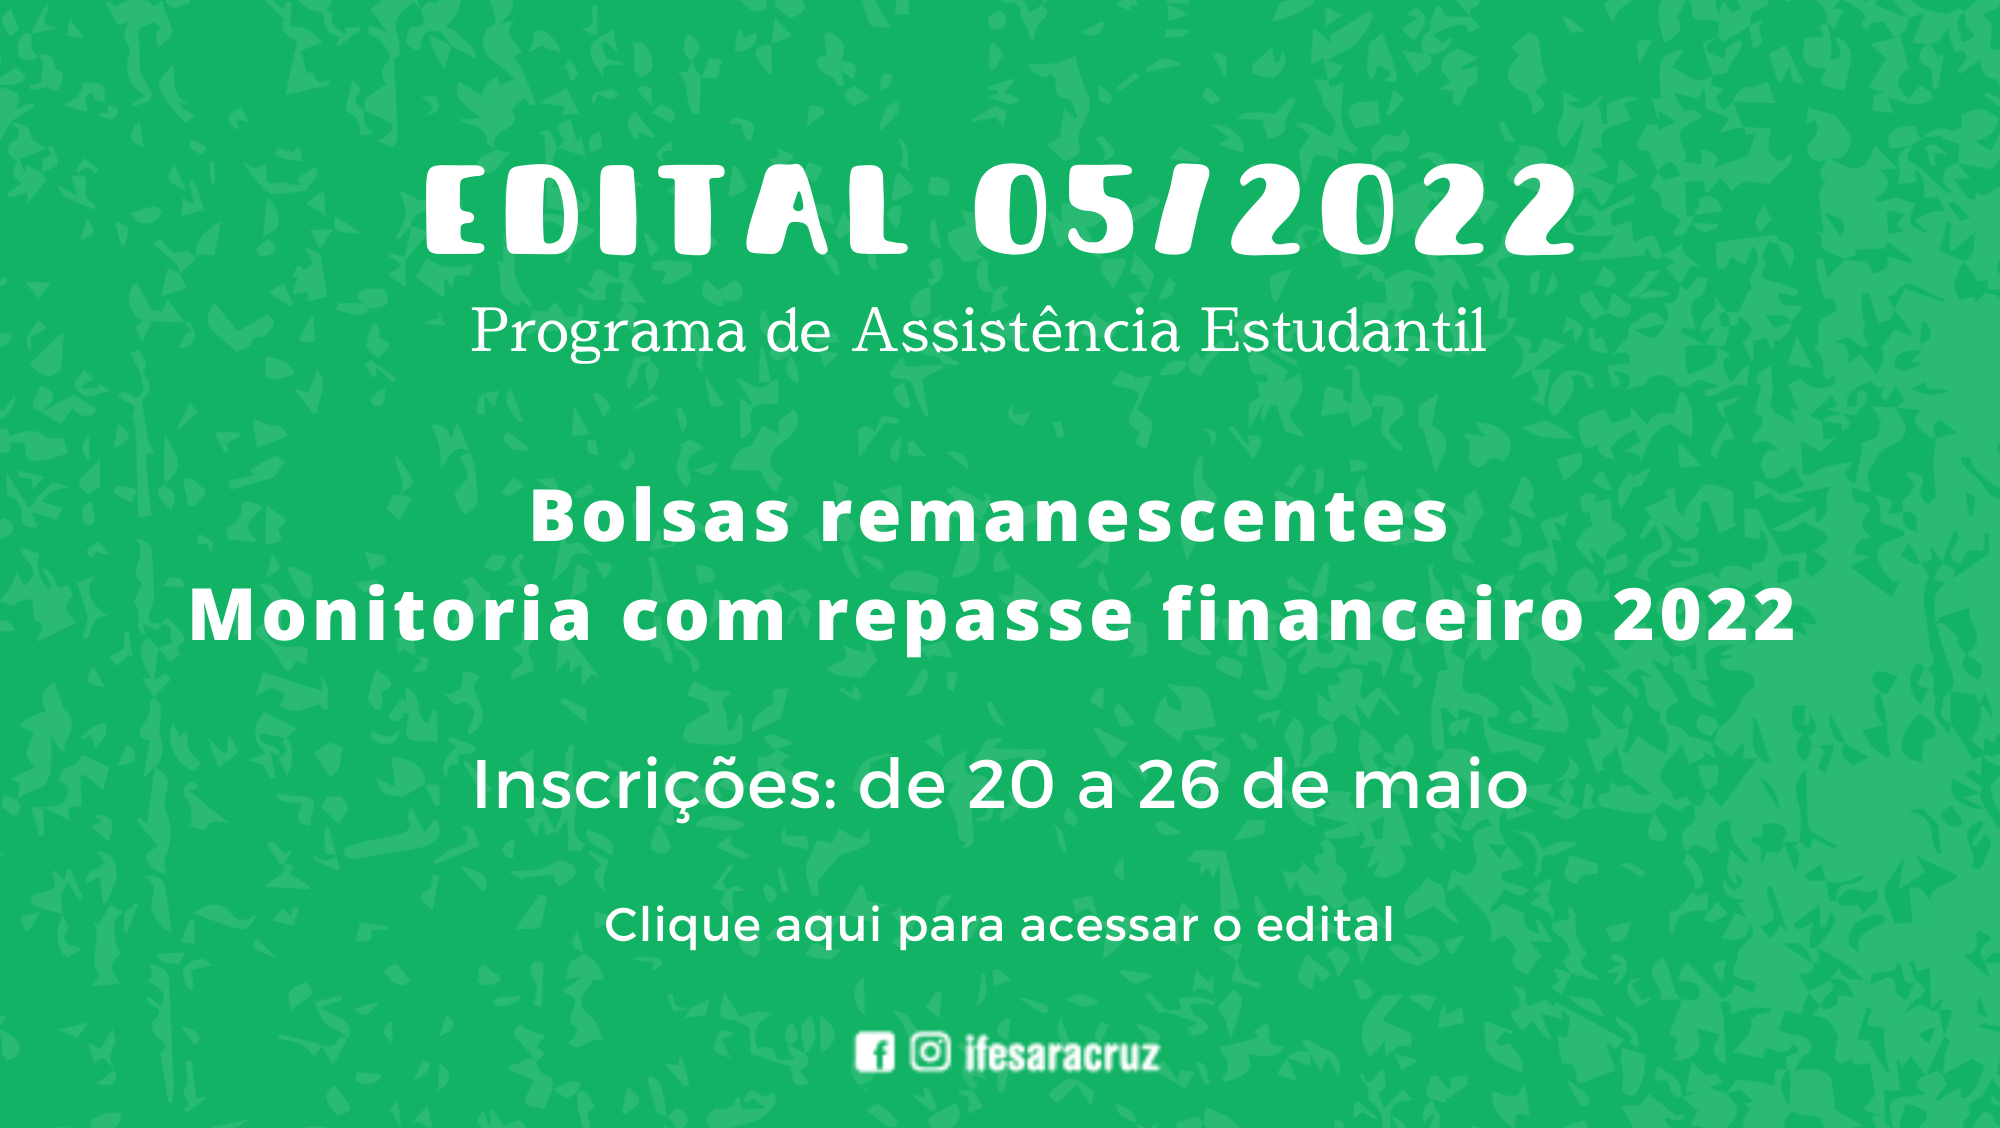 Edital 05/2022 - Bolsas remanescentes Auxílio Monitoria com repasse financeiro 2022